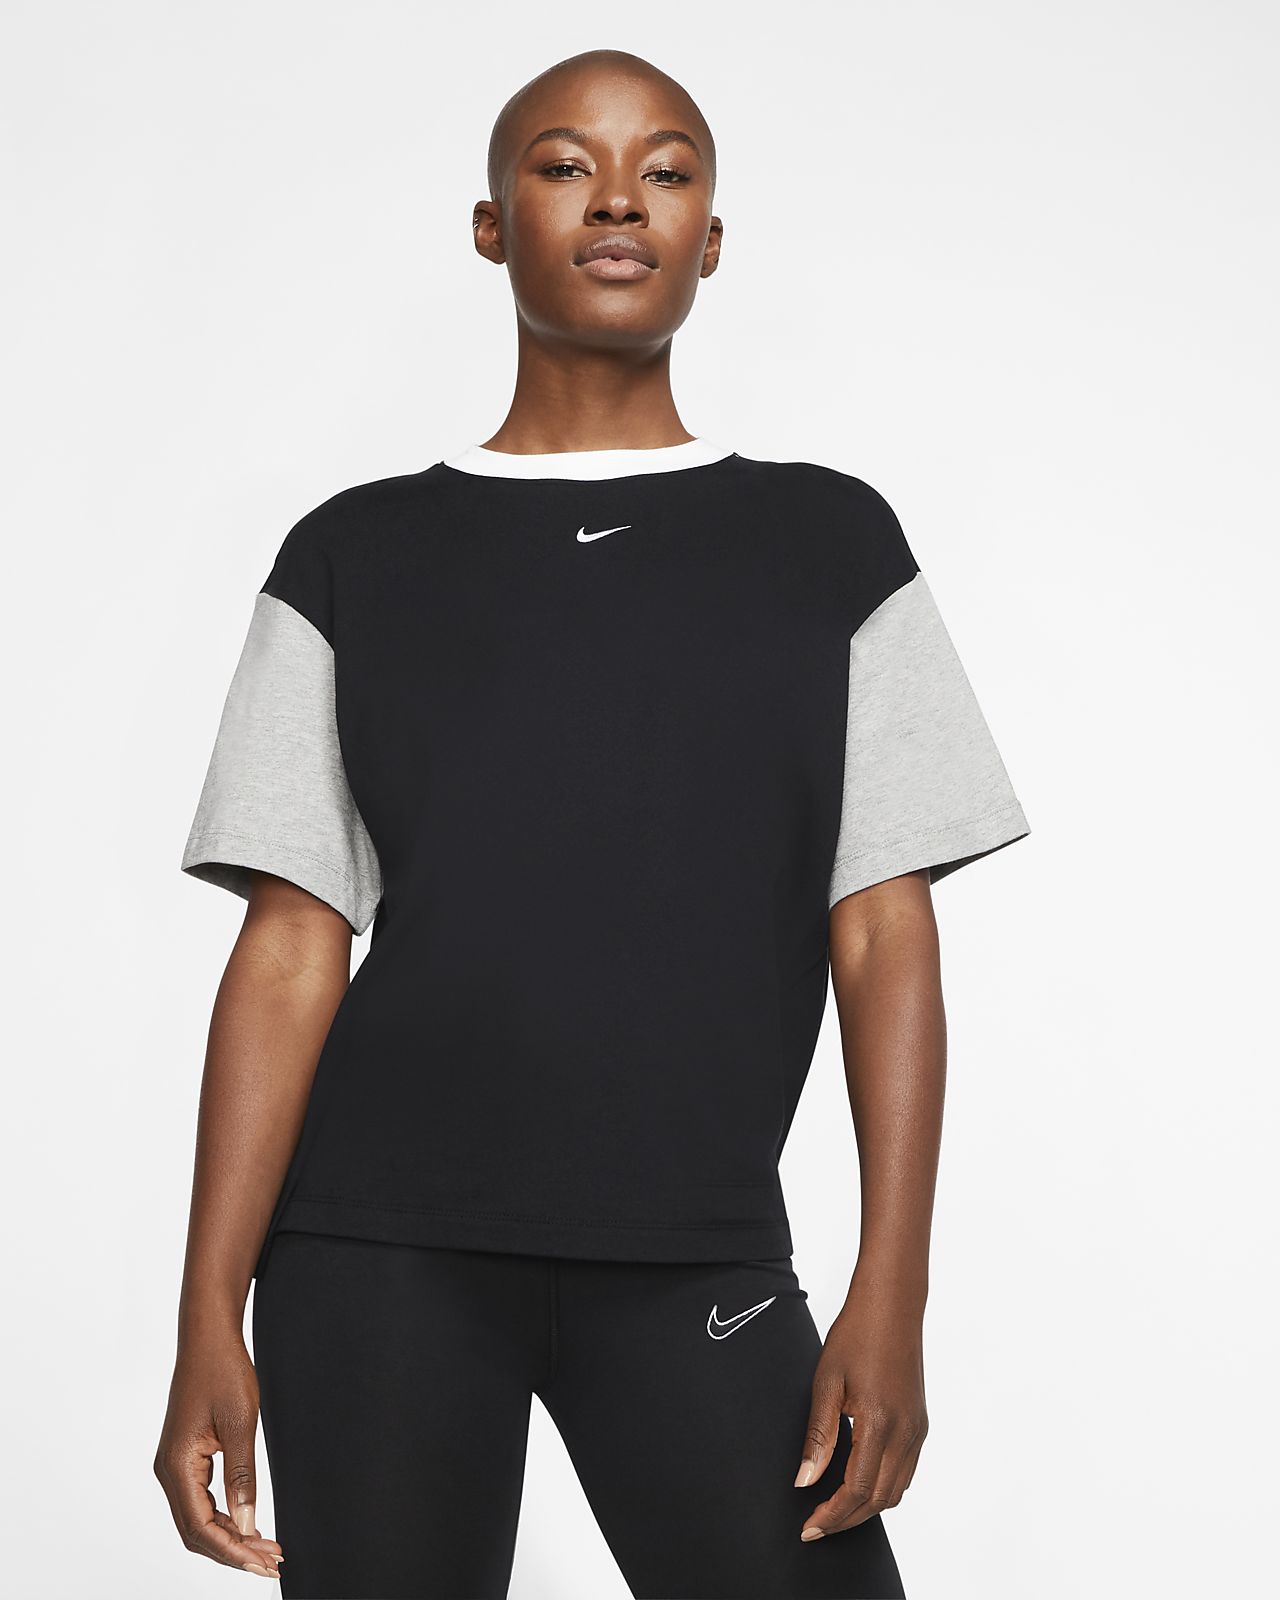 Short-Sleeve Top. Nike HR